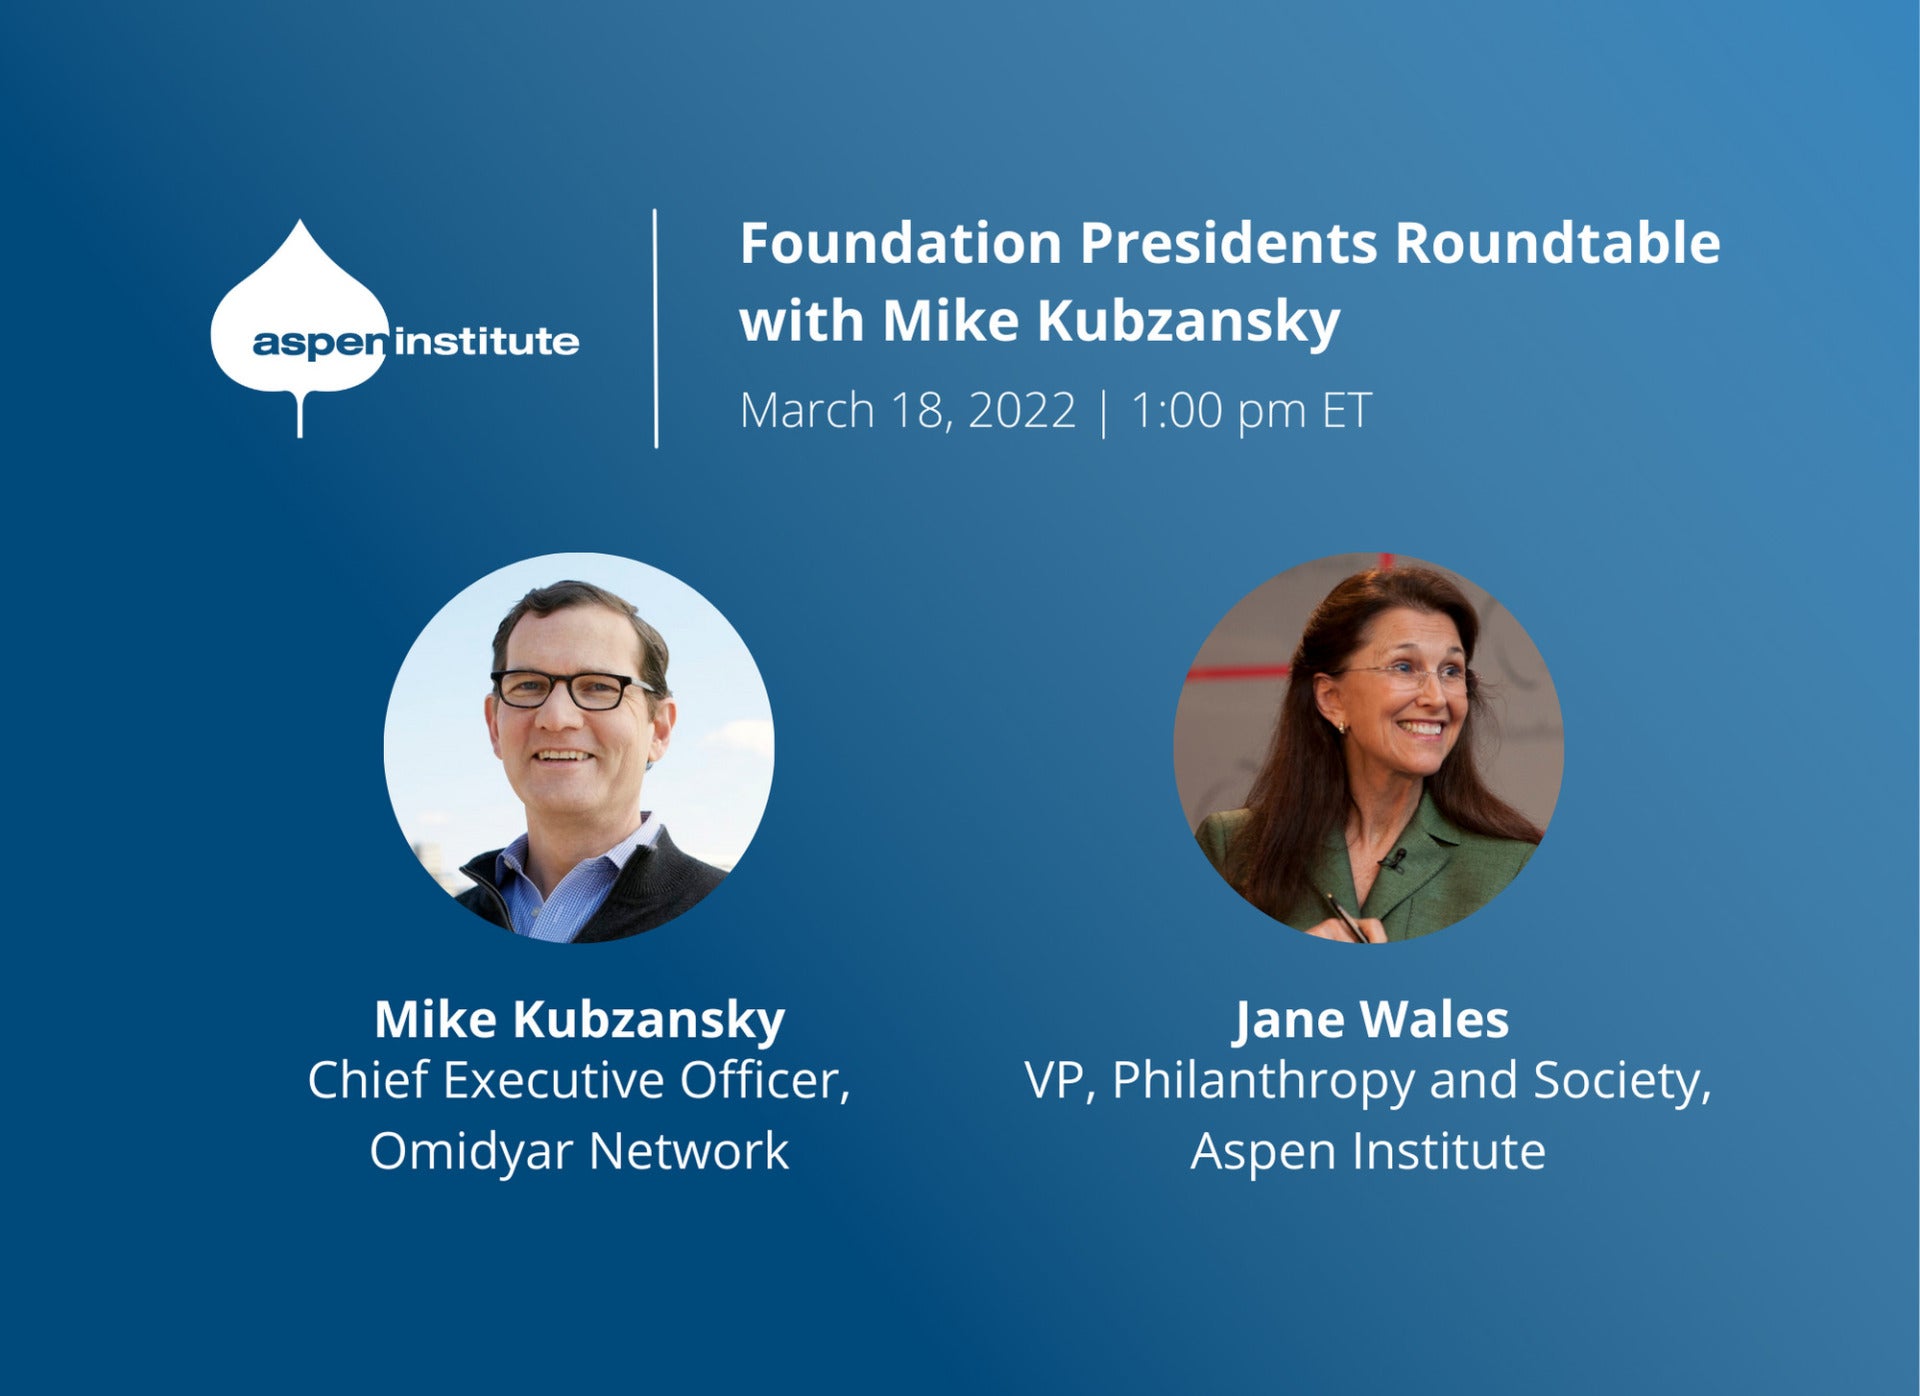 Foundation Presidents Roundtable featuring Mike Kubzansky